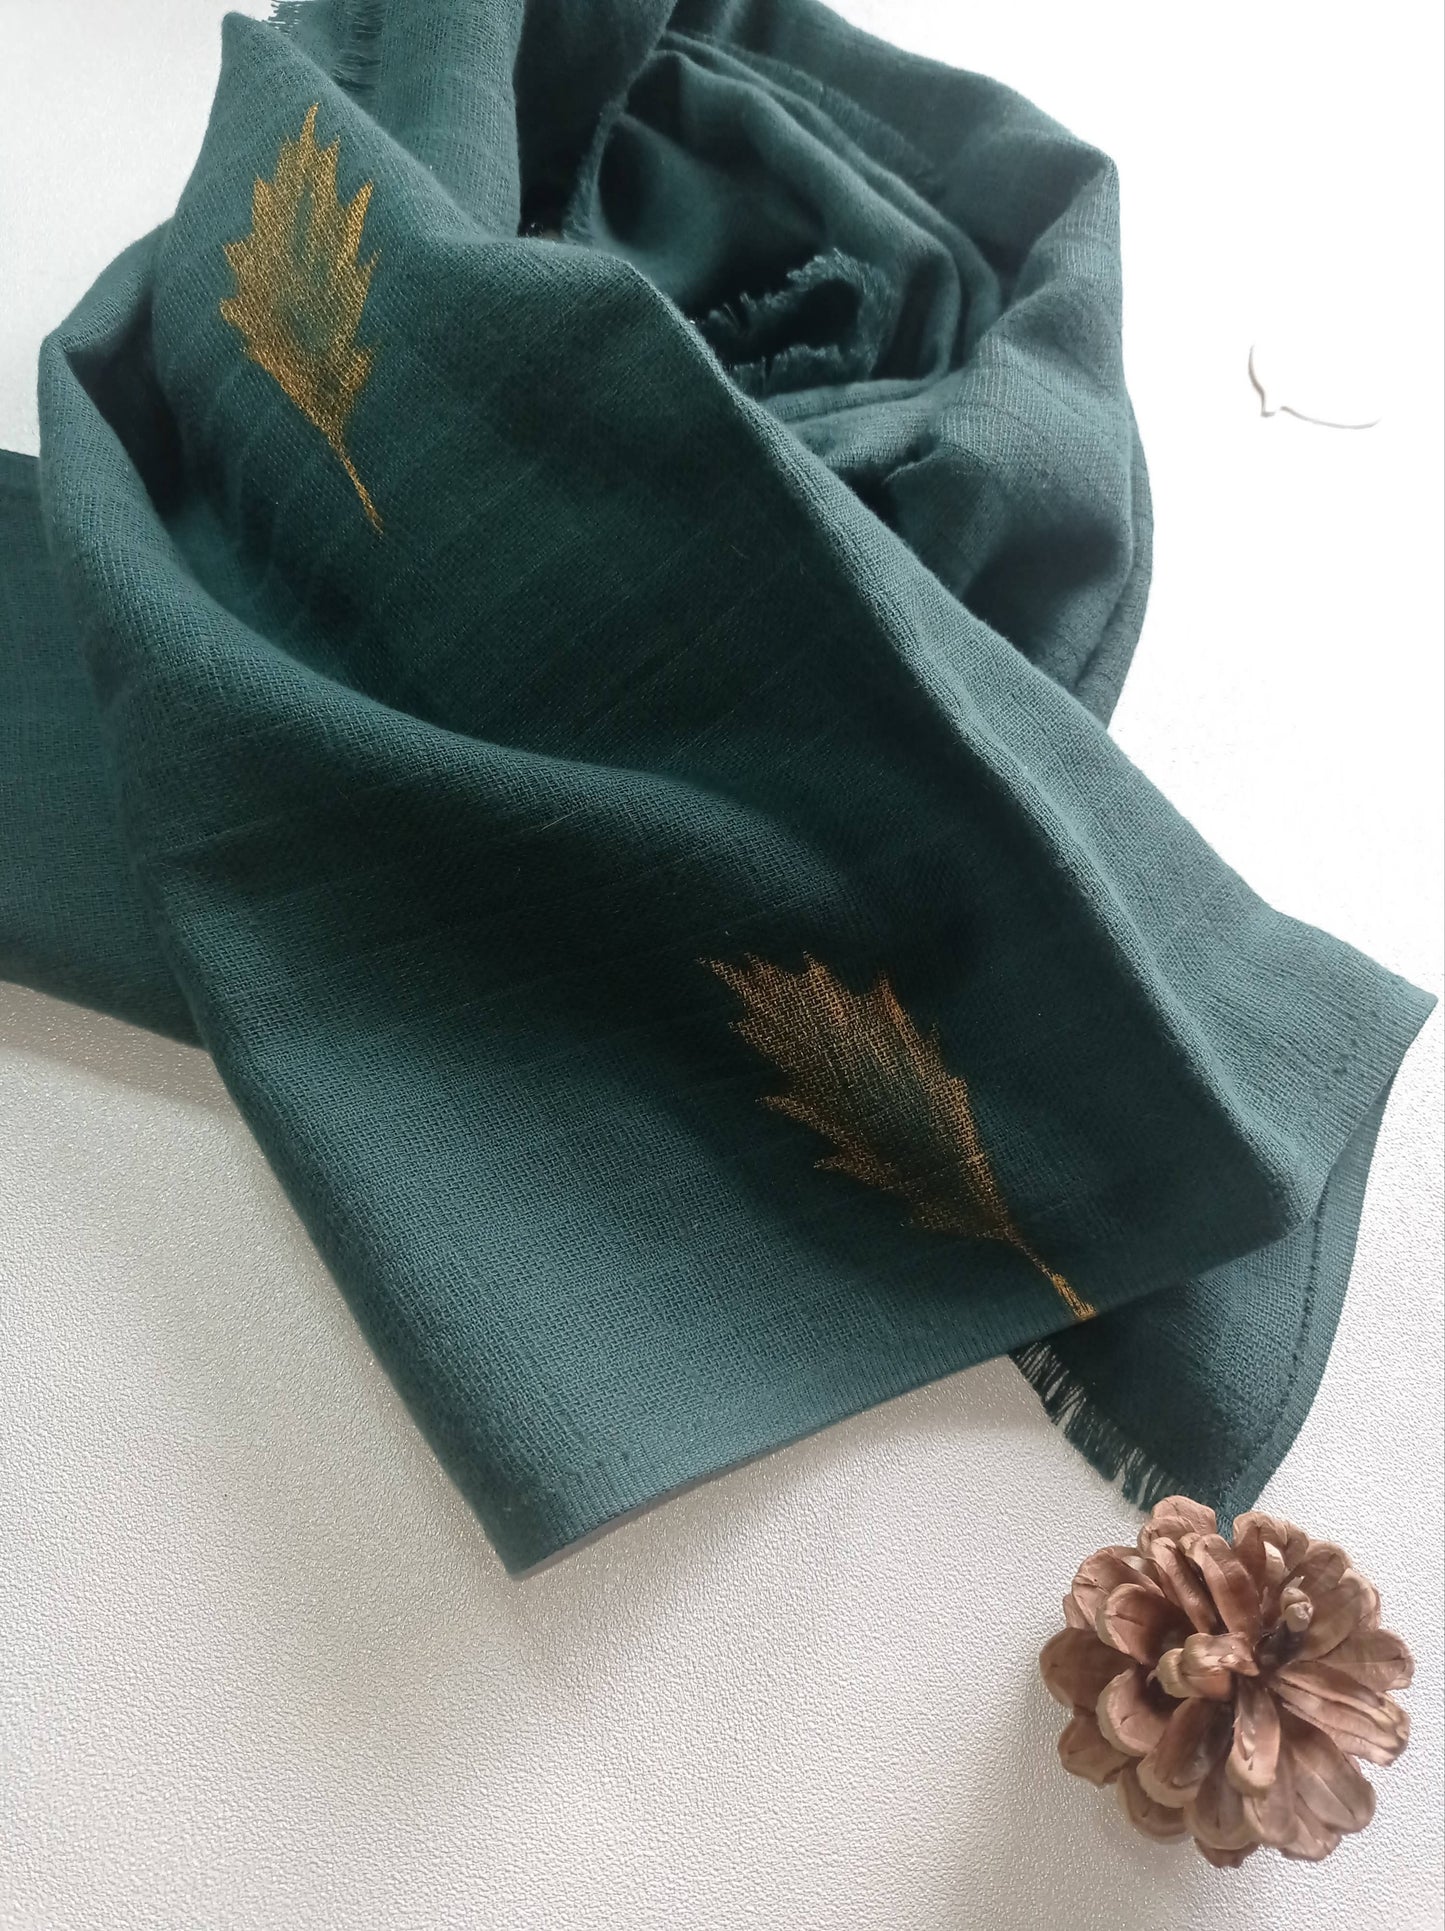 Foulard en Coton Bio, Vert d'Eau  Made in France, Cadeau Femme, Cache nez  Uni vert clair, Chèche vert pastel – socreateur